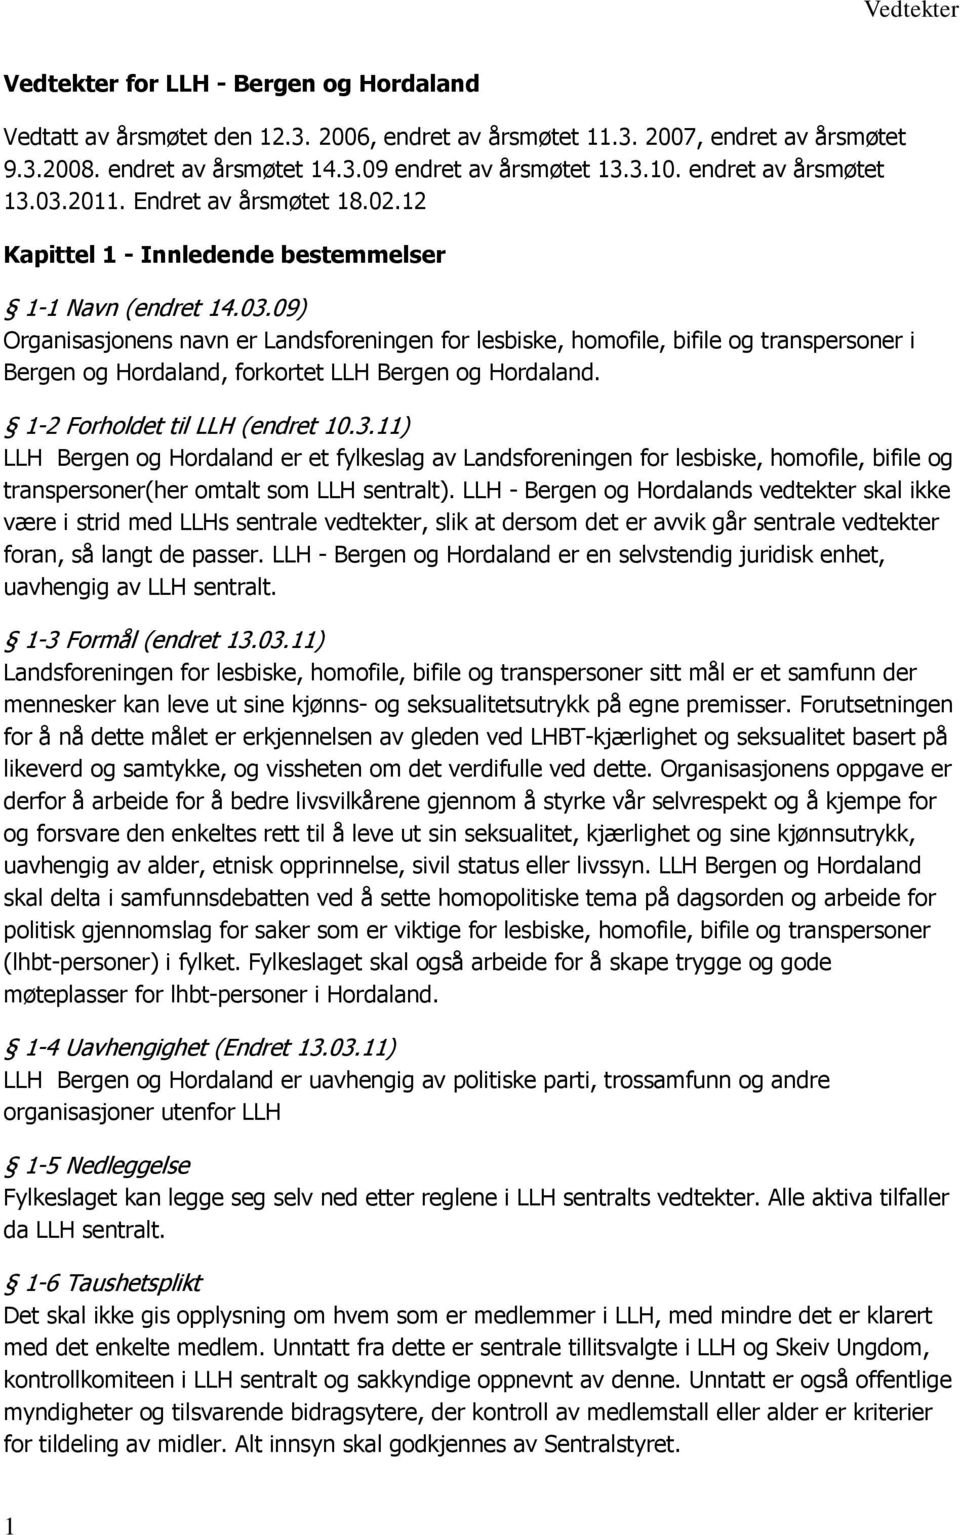 1-2 Forholdet til LLH (endret 10.3.11) LLH Bergen og Hordaland er et fylkeslag av Landsforeningen for lesbiske, homofile, bifile og transpersoner(her omtalt som LLH sentralt).